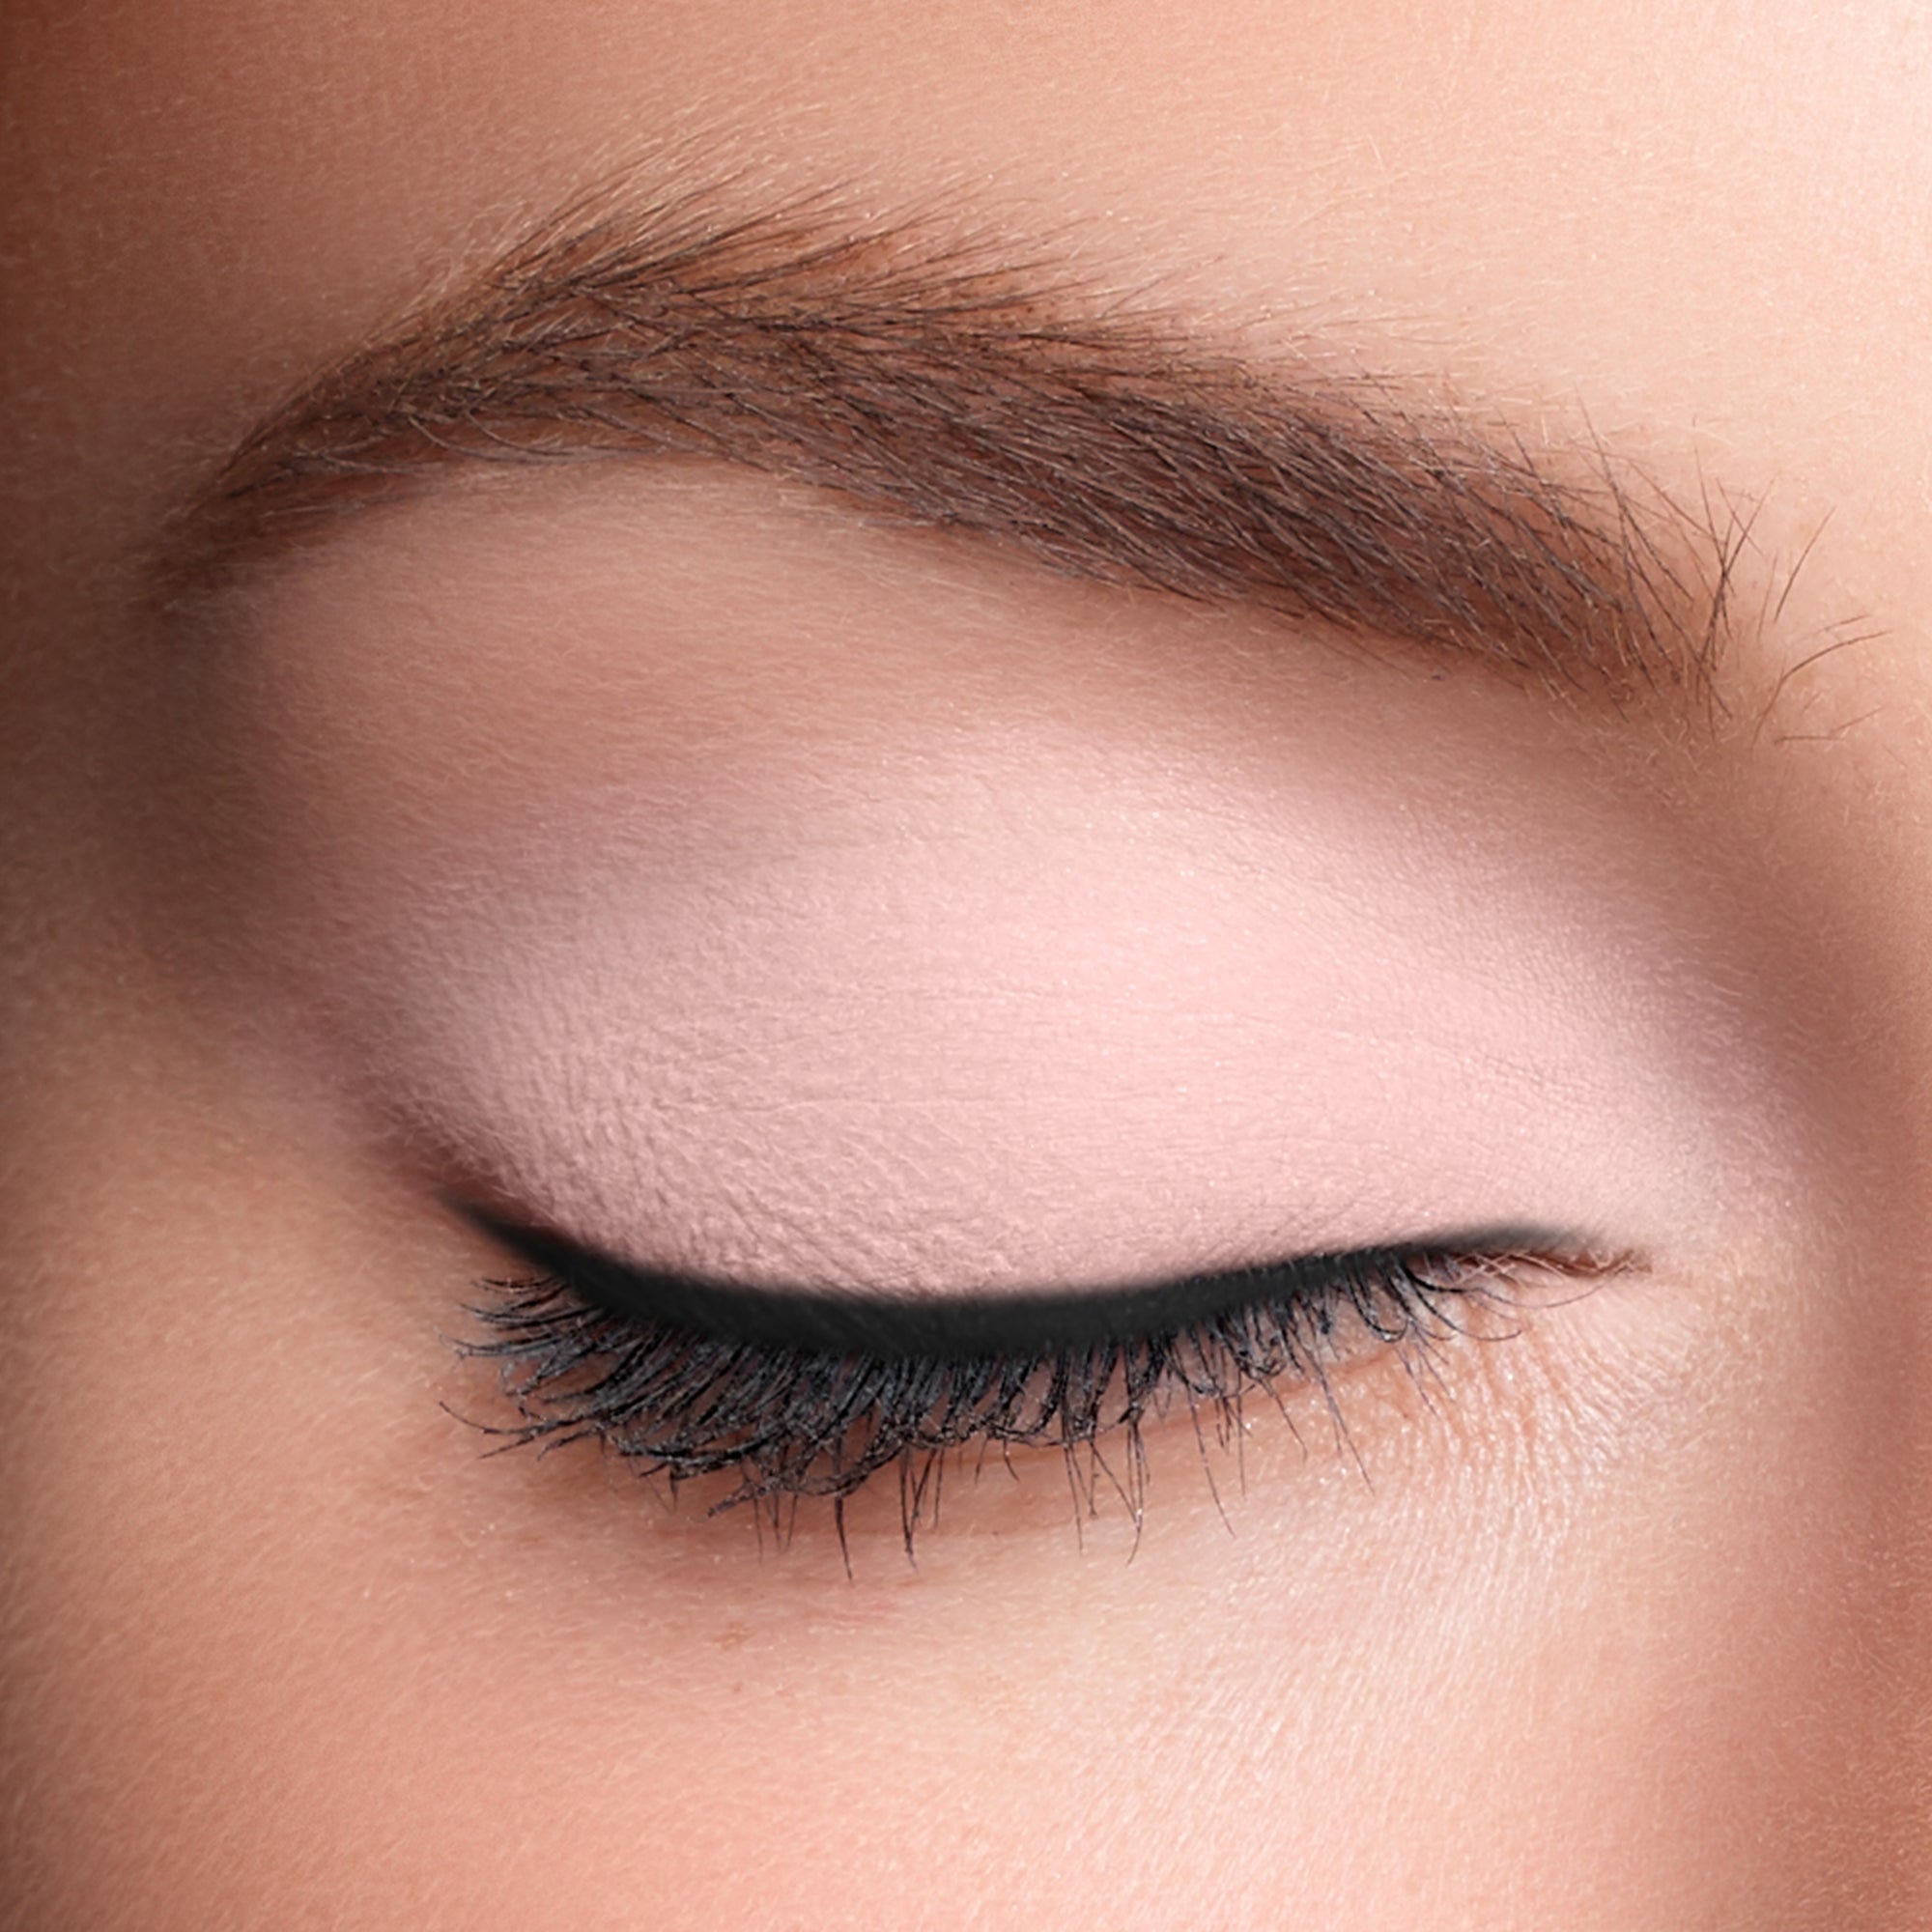 Make Up For Ever Gentle Eye Gel Waterproof Eye & Lip Makeup